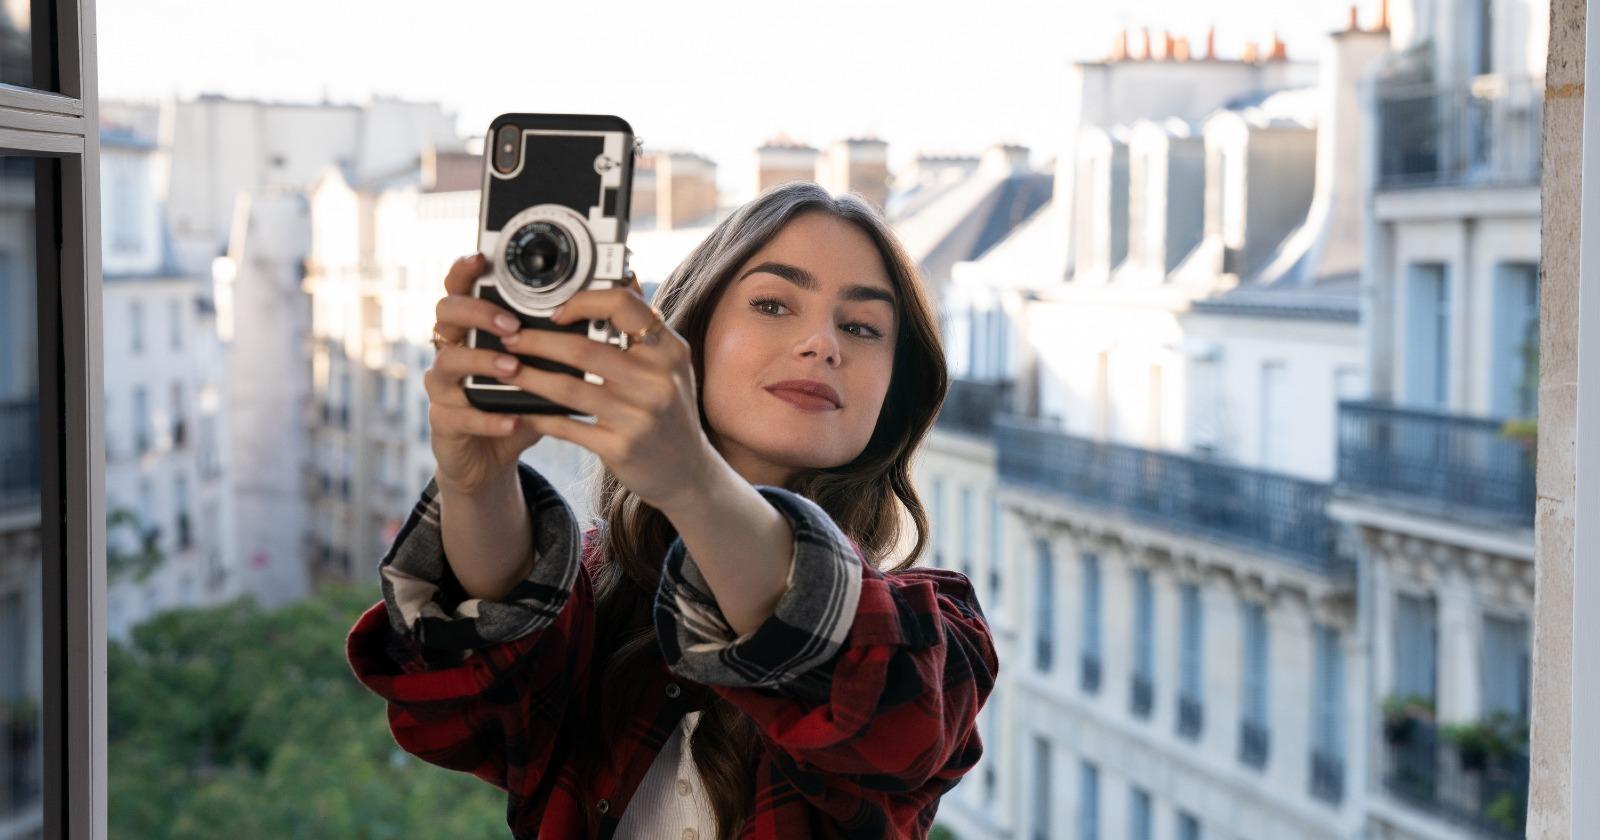 Emily en París en el balcón de su habitación Chambre de Bonne, tomándose una Selfie con los edificios blancos parisinos de fondo